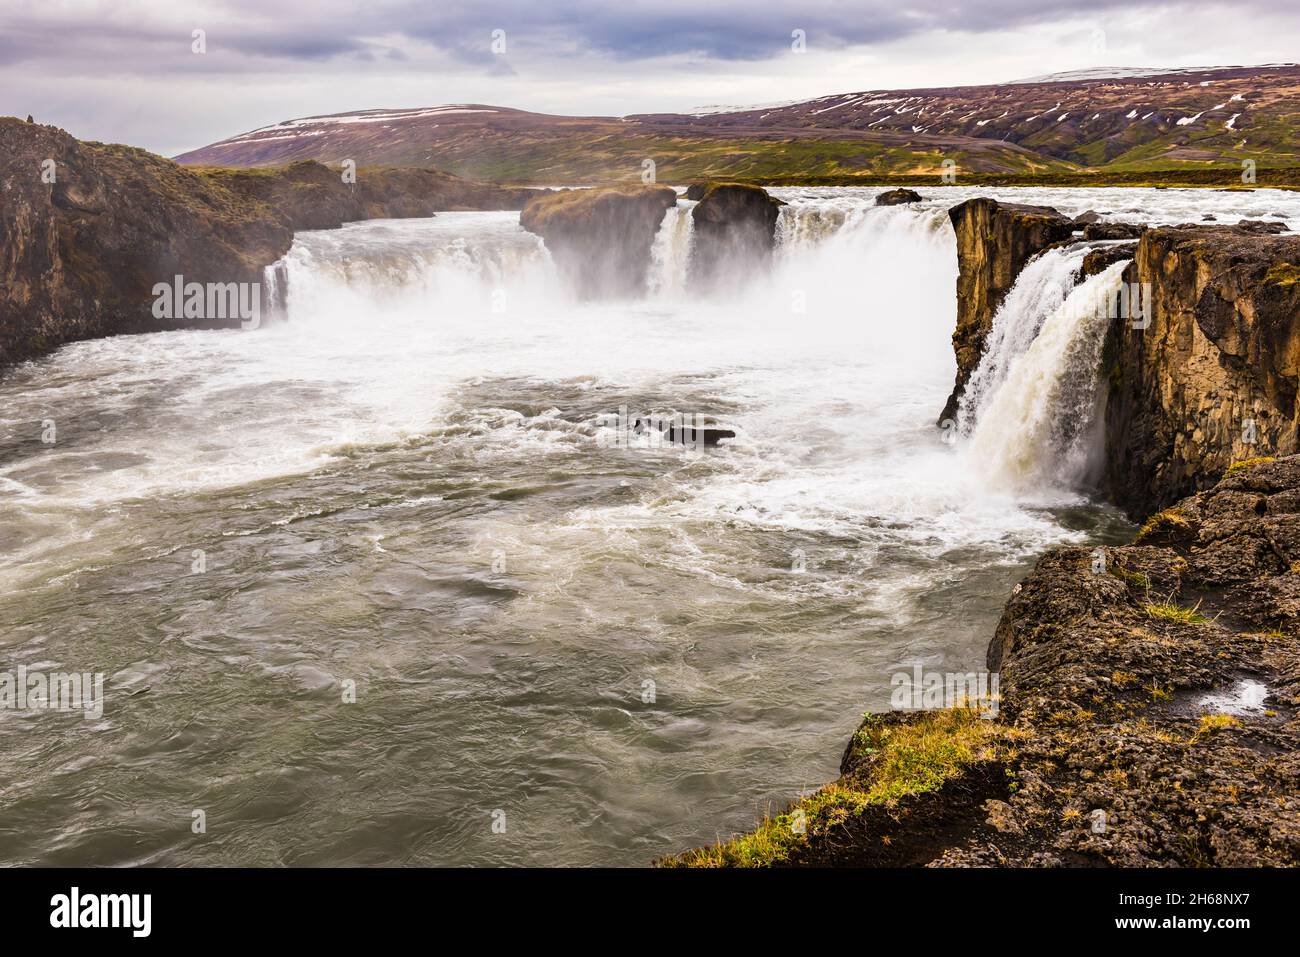 La majestueuse cascade de Godafoss, près de Laugar, au nord de l'Islande Banque D'Images